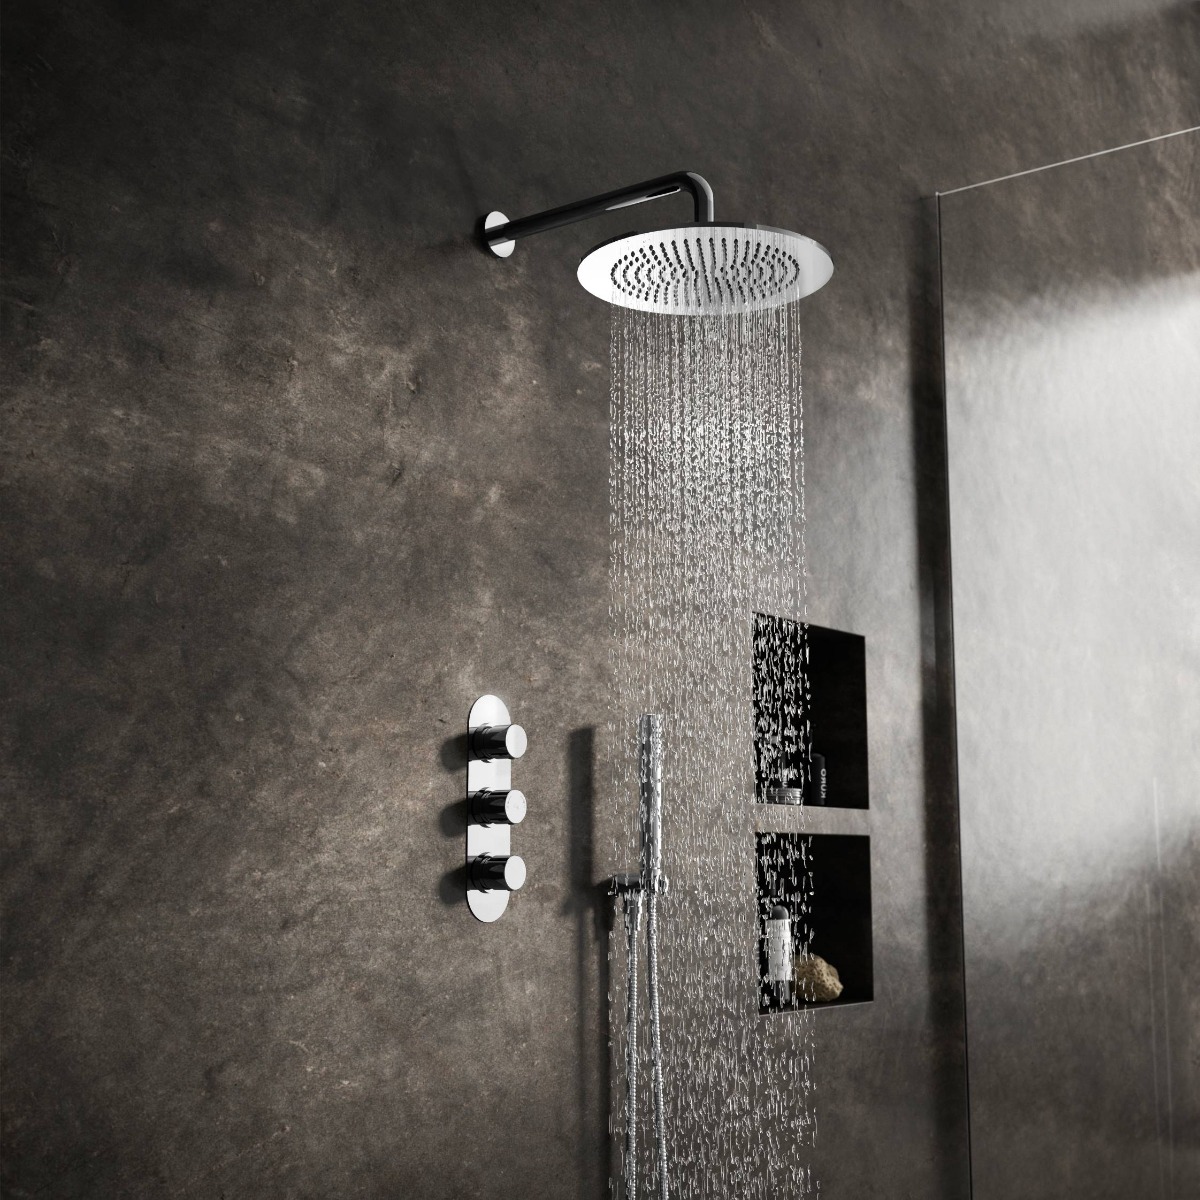 dark rustic wall tiles in wet room shower